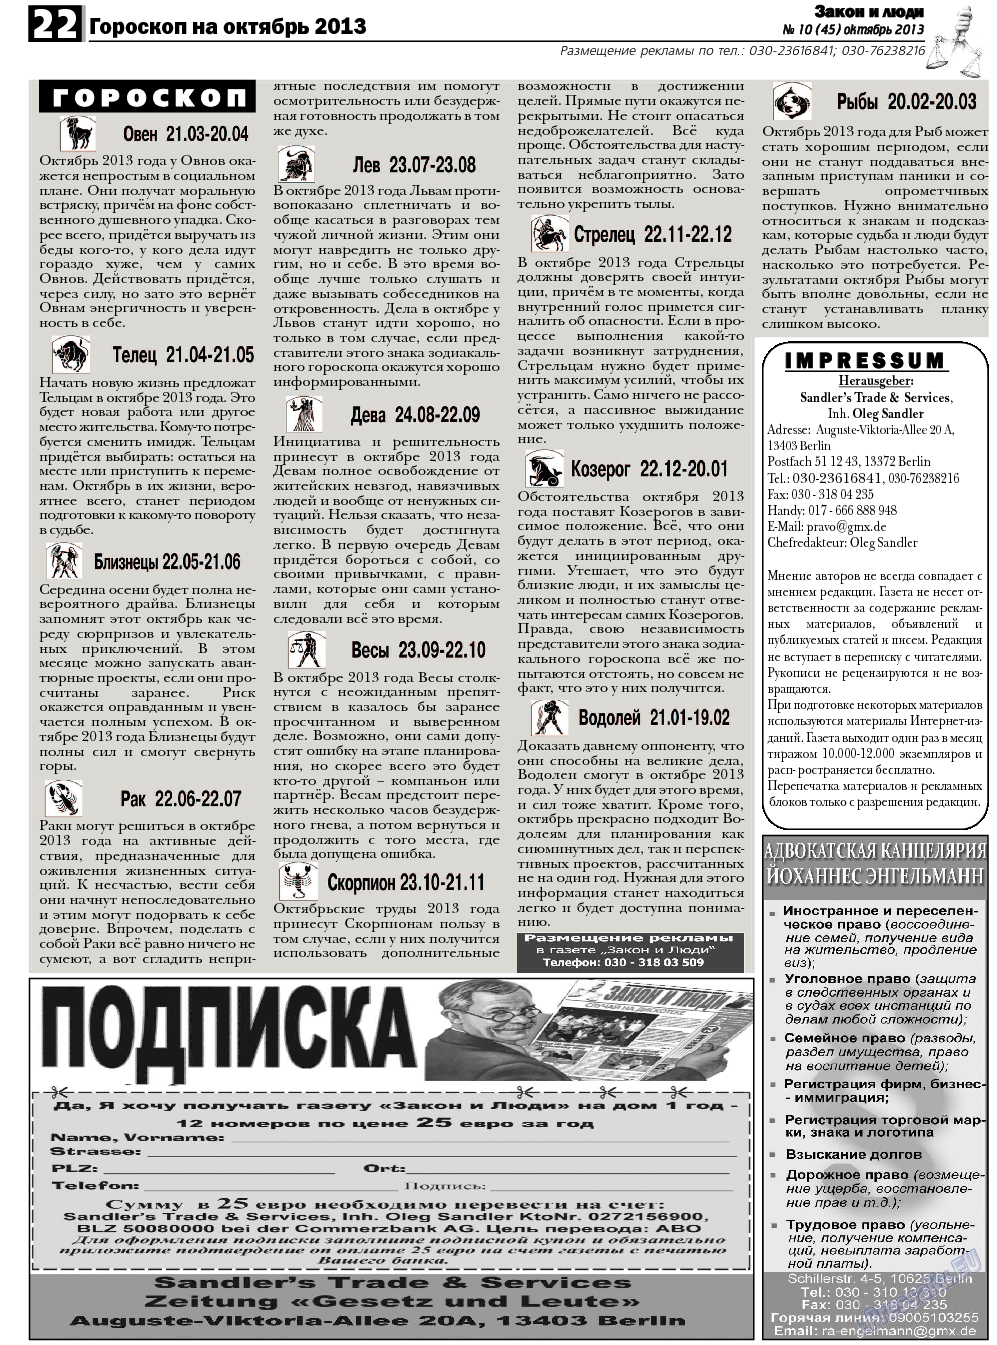 Закон и люди, газета. 2013 №10 стр.22